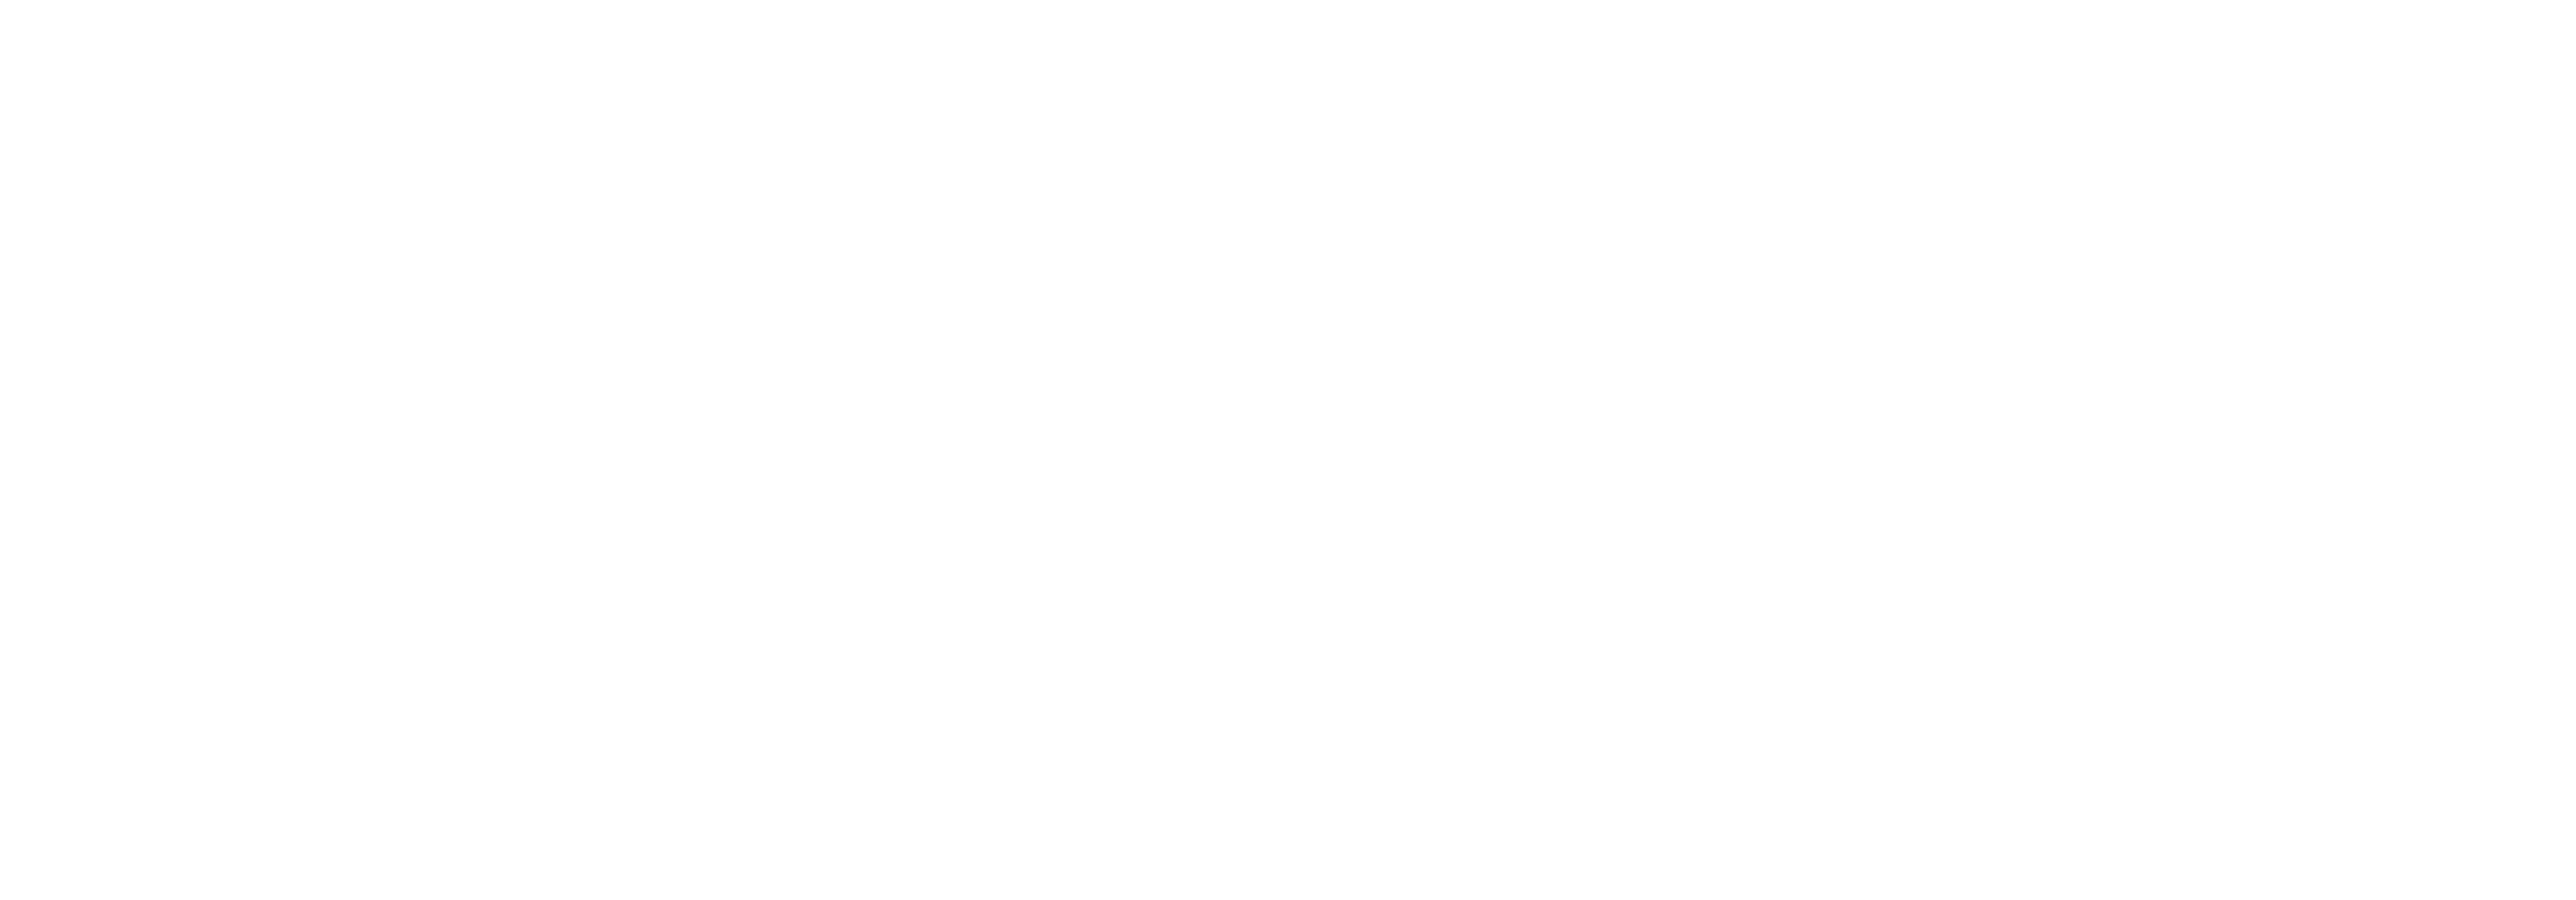 Boway Group logo